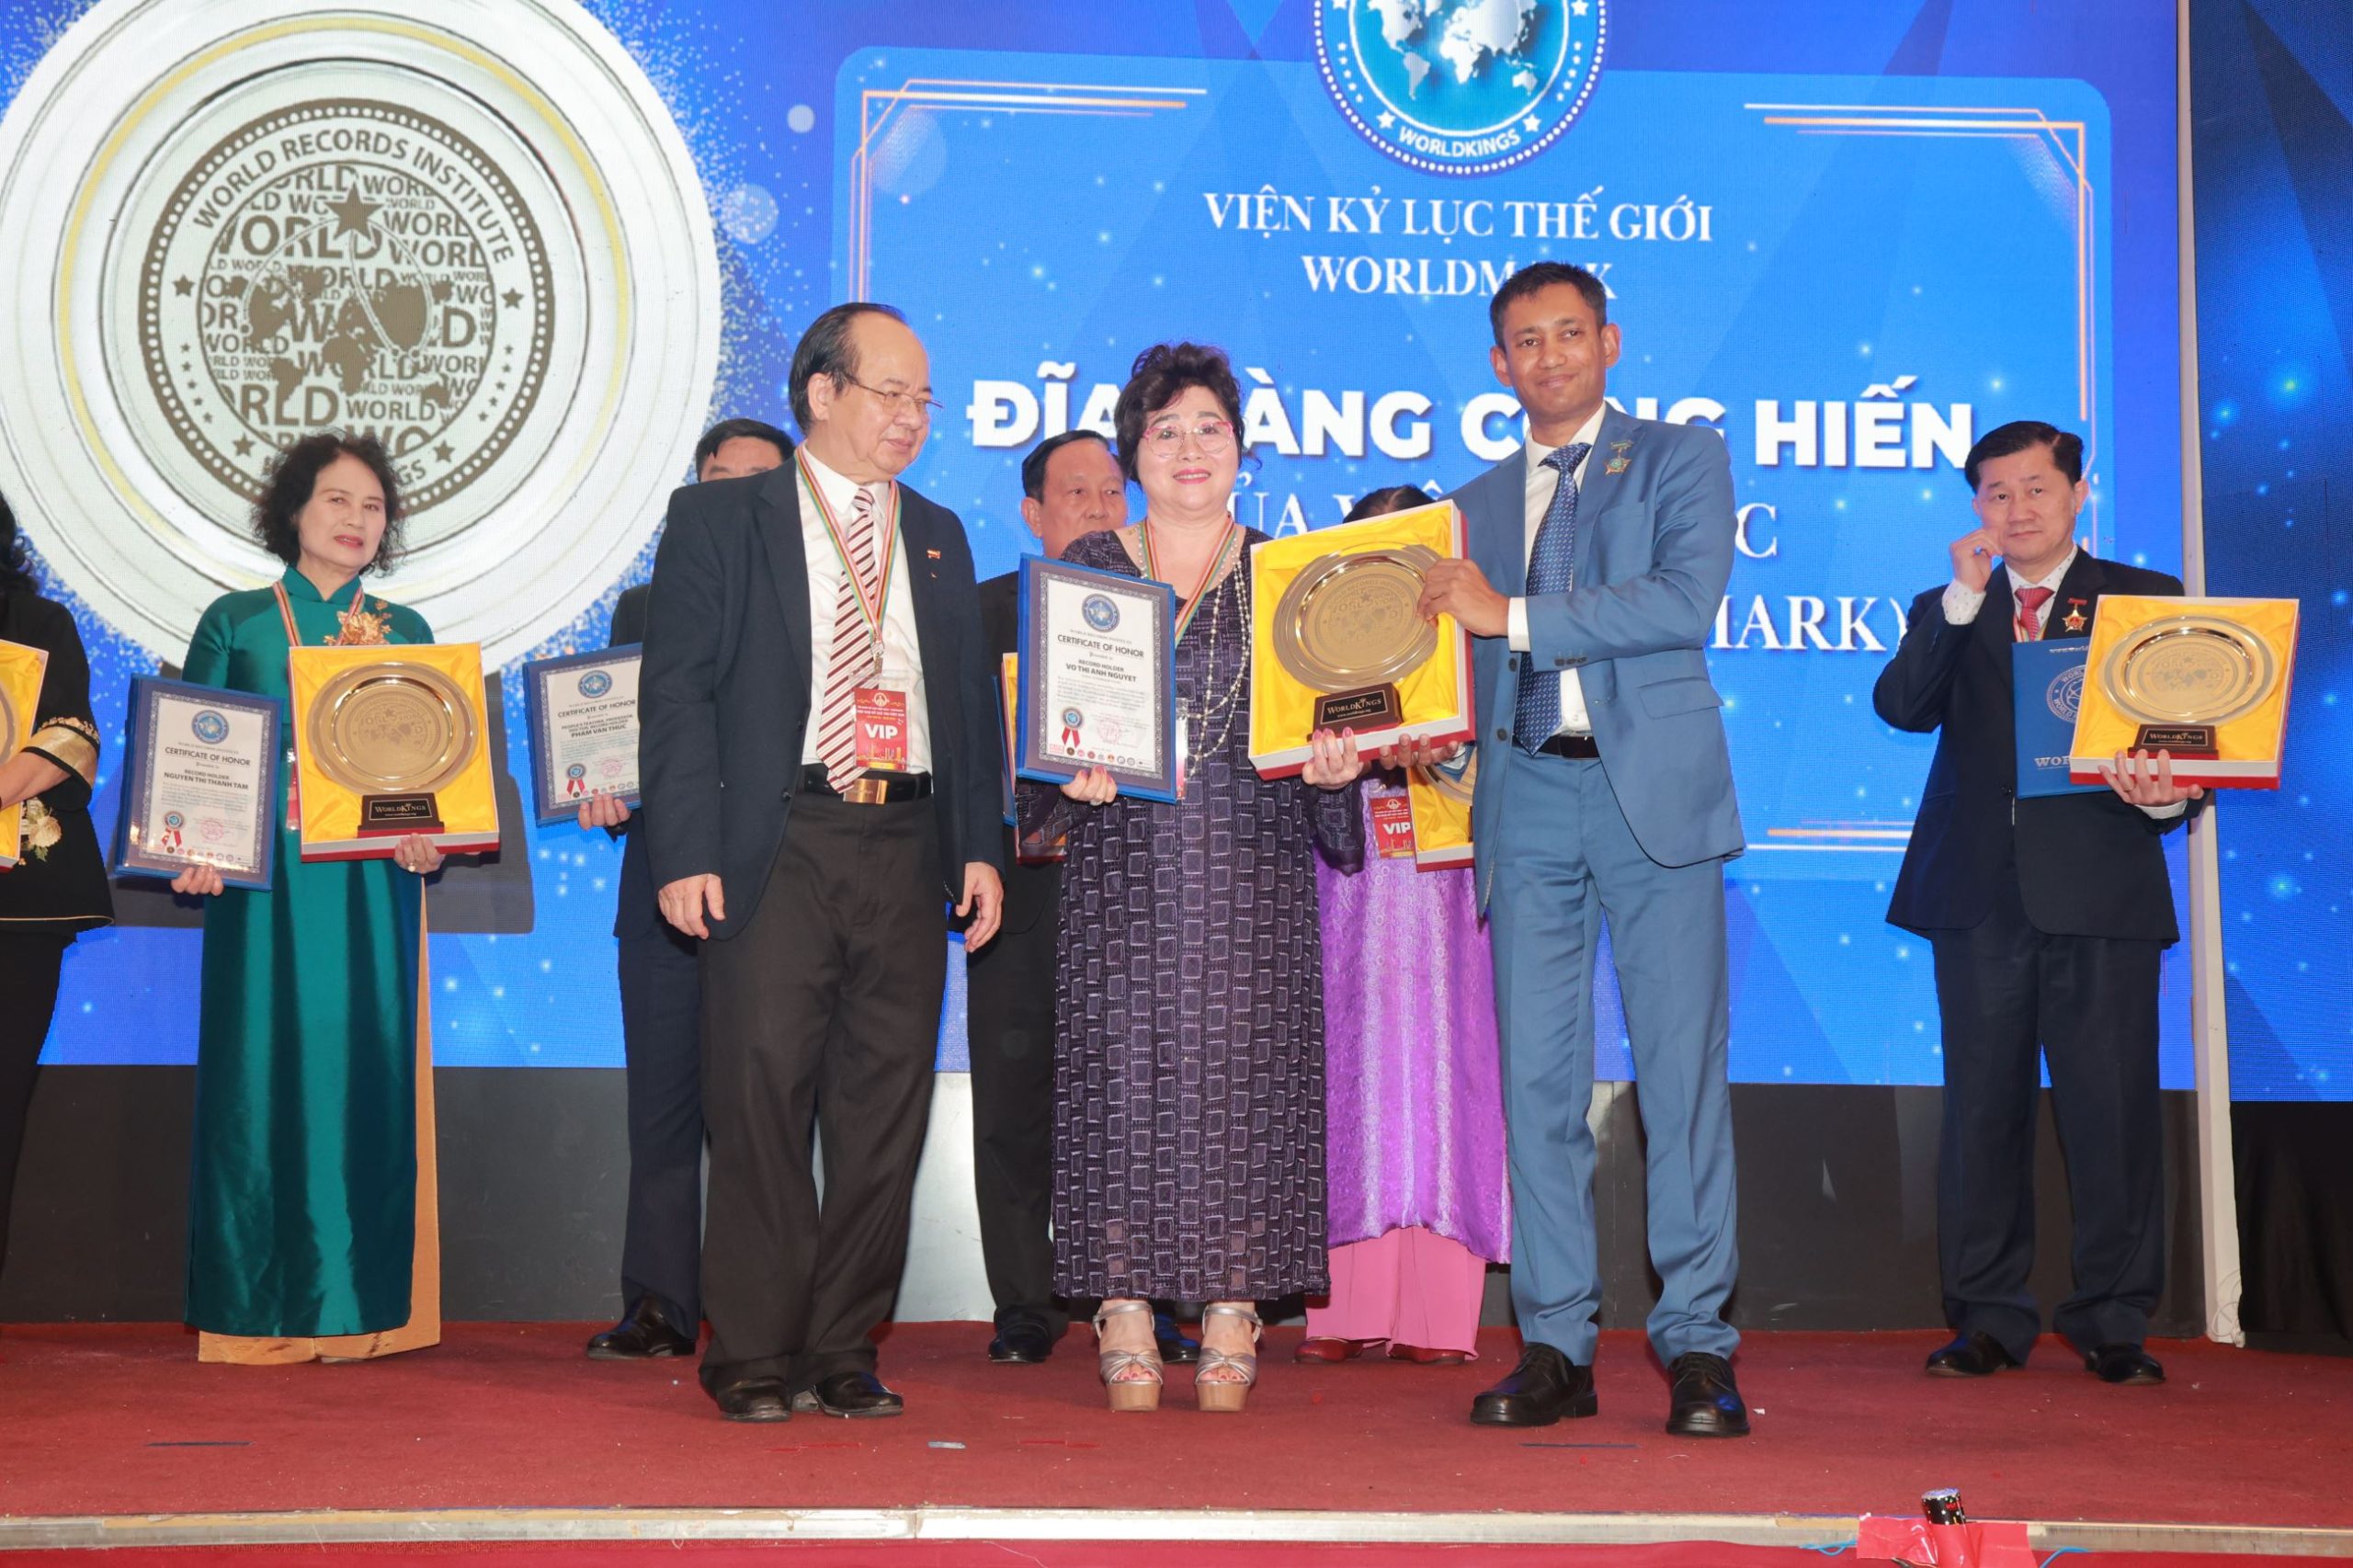 Tiến sĩ Biswaroop Roy Chowdhury và Giáo sư, Viện sĩ Hoàng Quang Thuận trao tặng Đĩa vàng Cống hiến đến Kỷ lục gia Võ Thị Ánh Nguyệt.